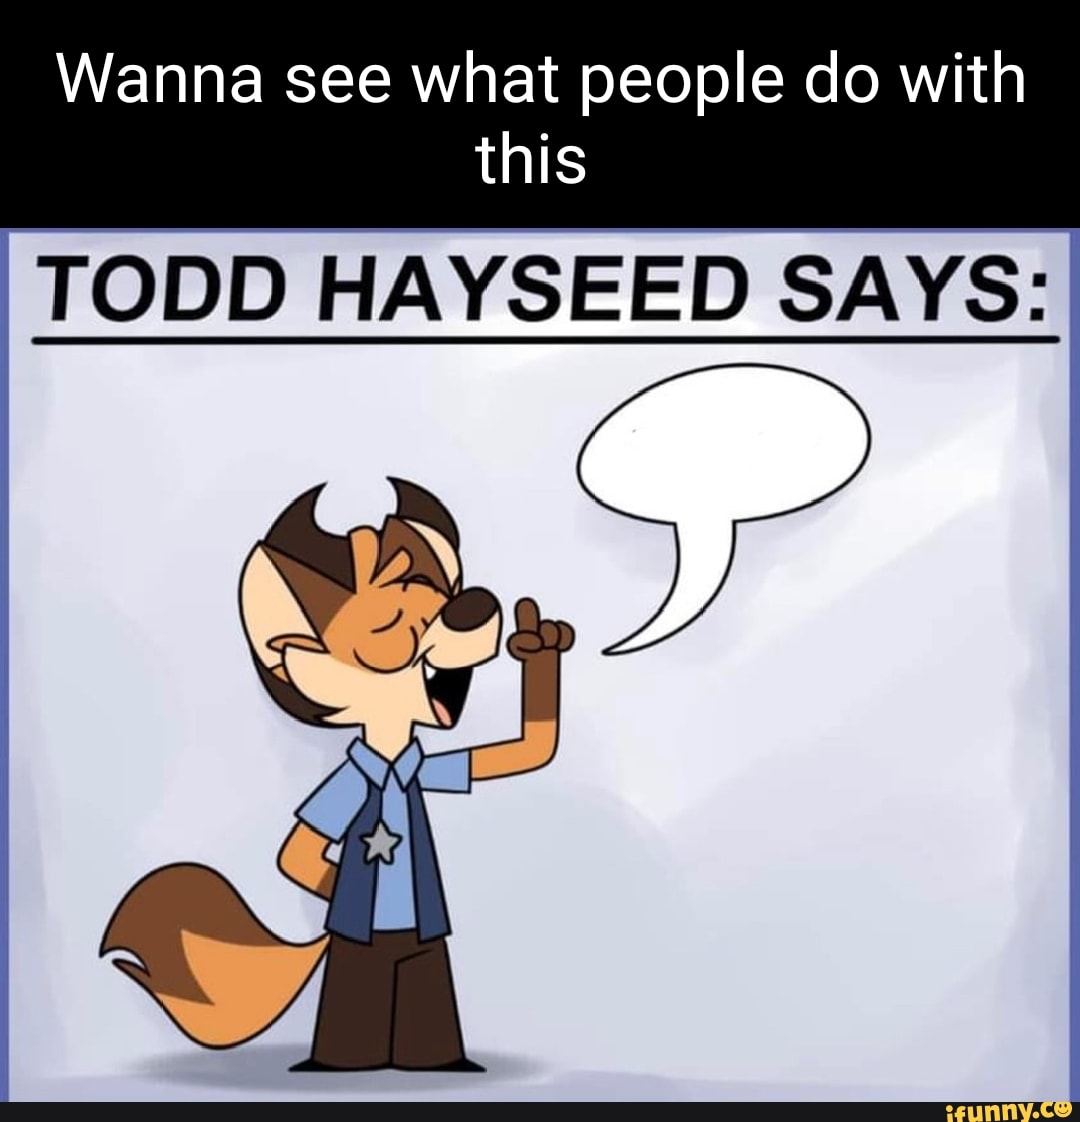 Todd hayseed